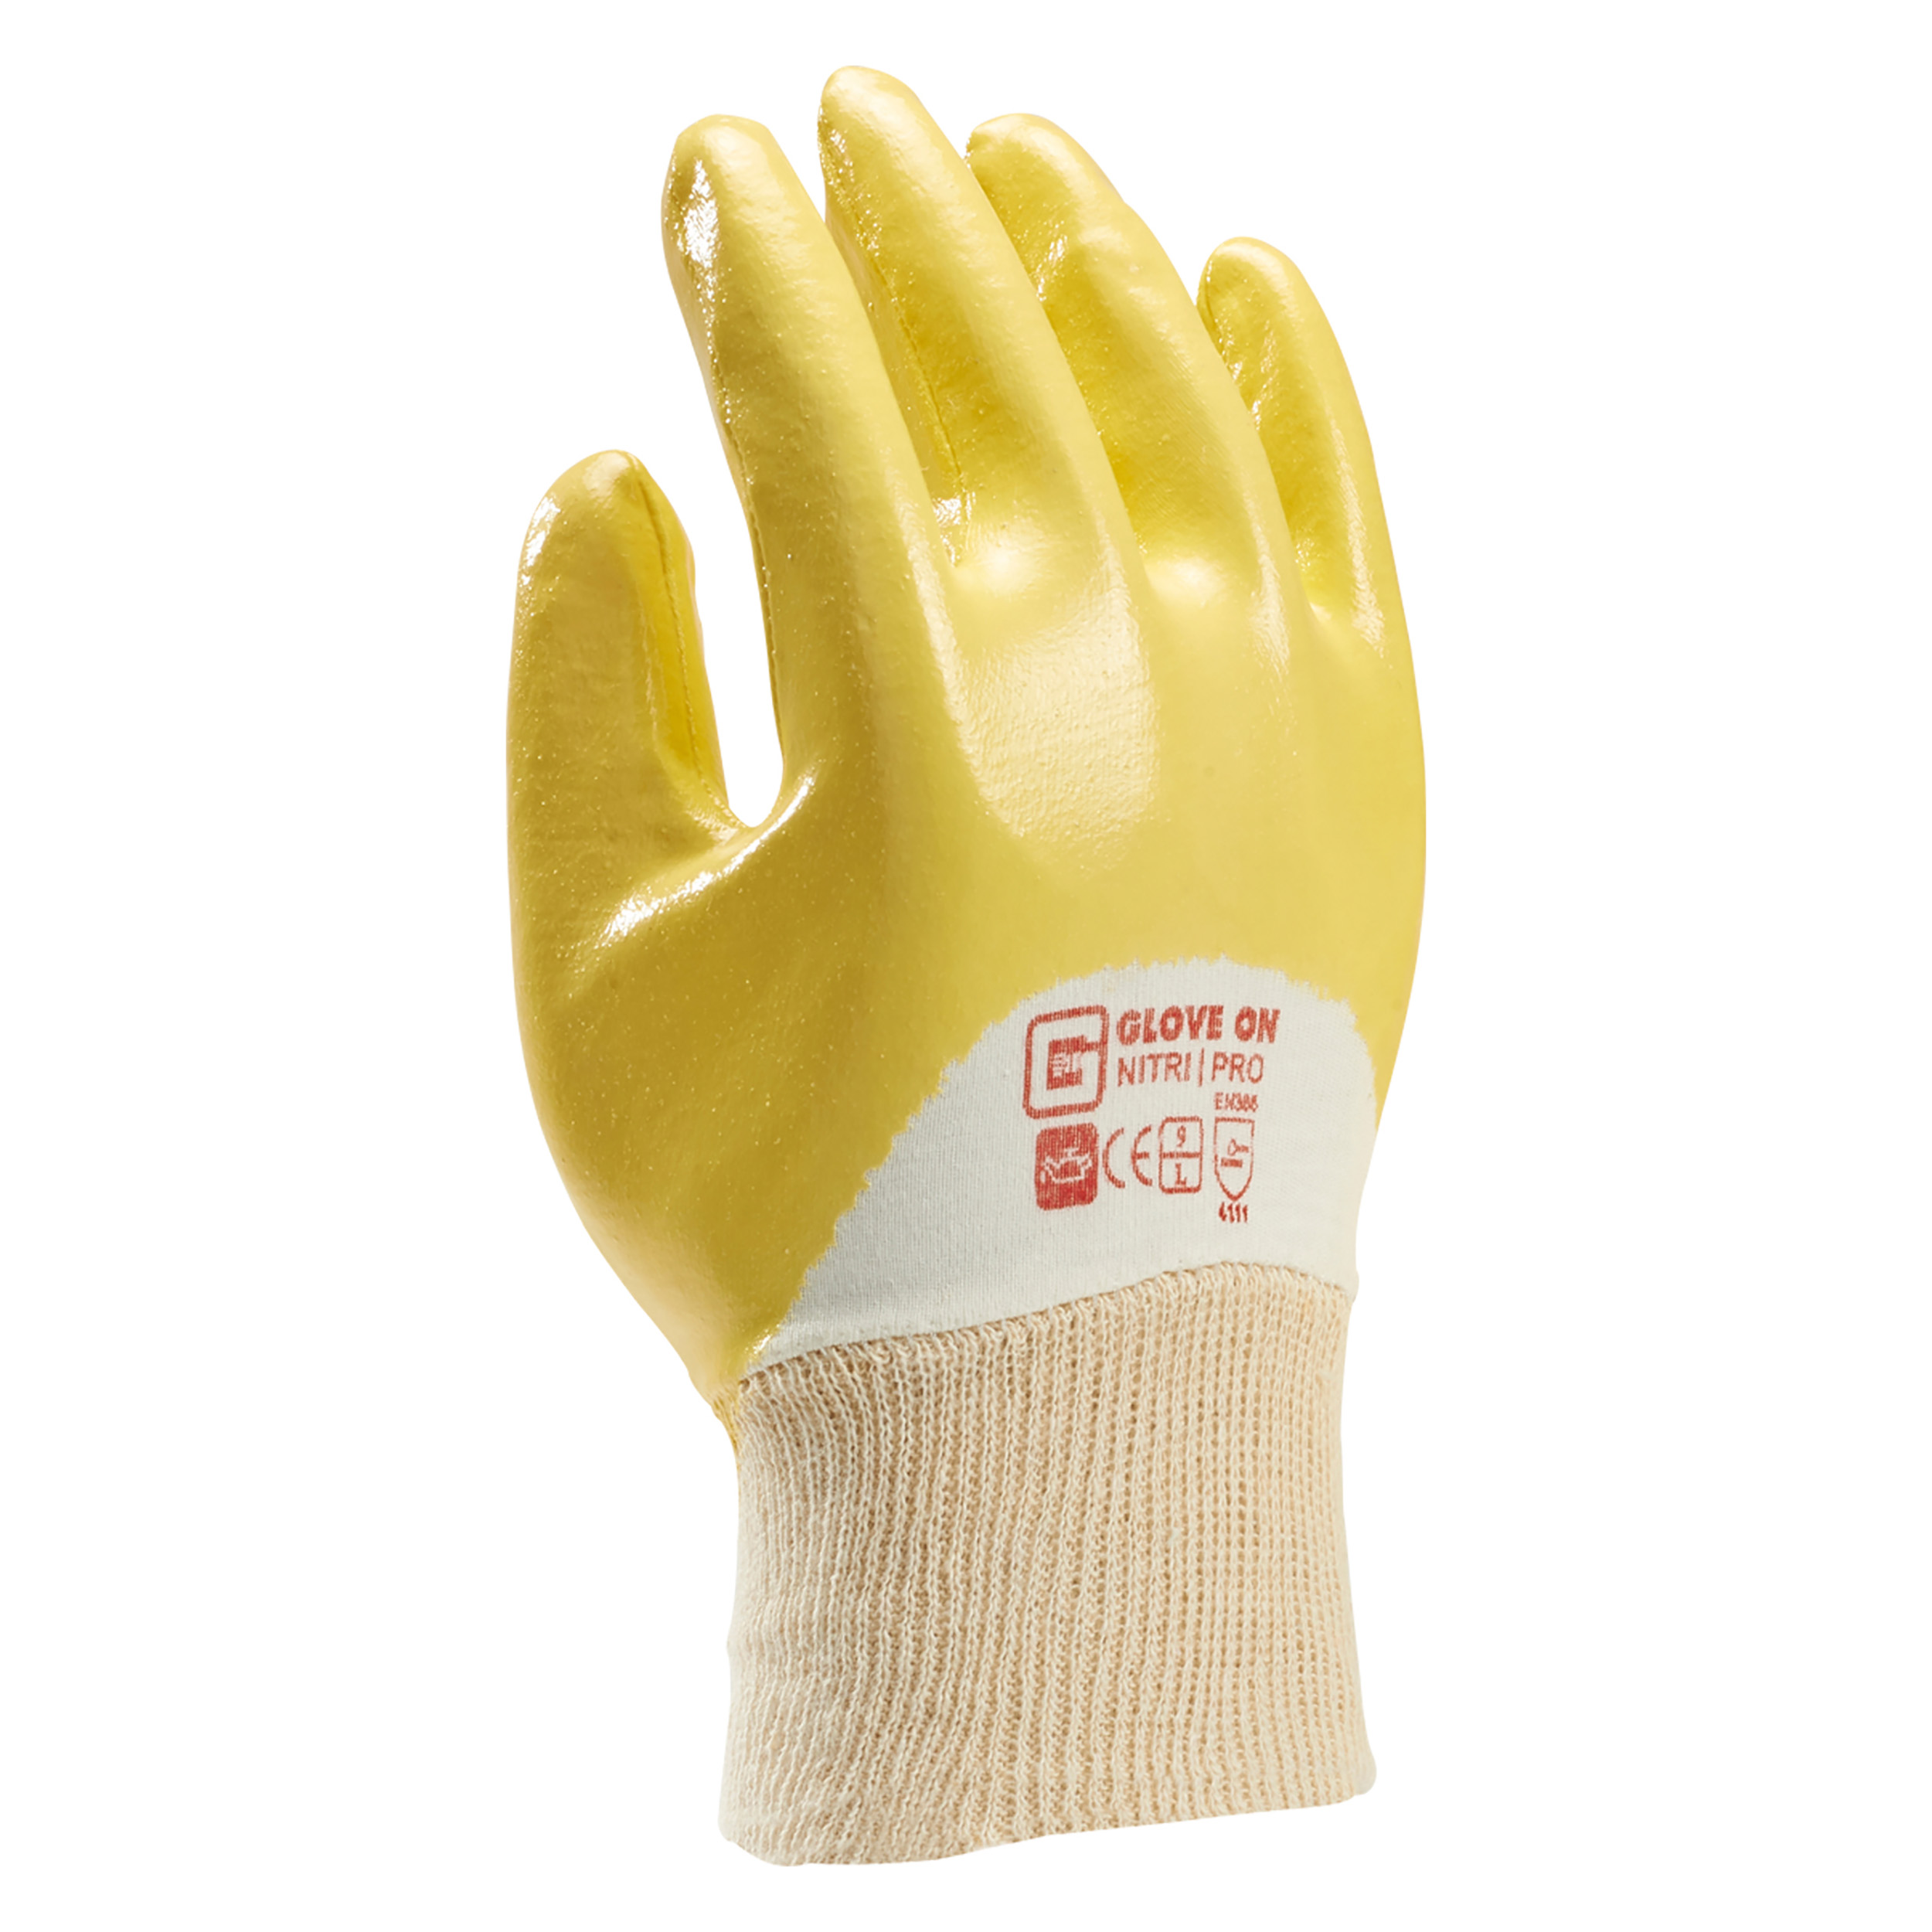 21.080.33 Glove On Nitri werkhandschoen nitri pro - L